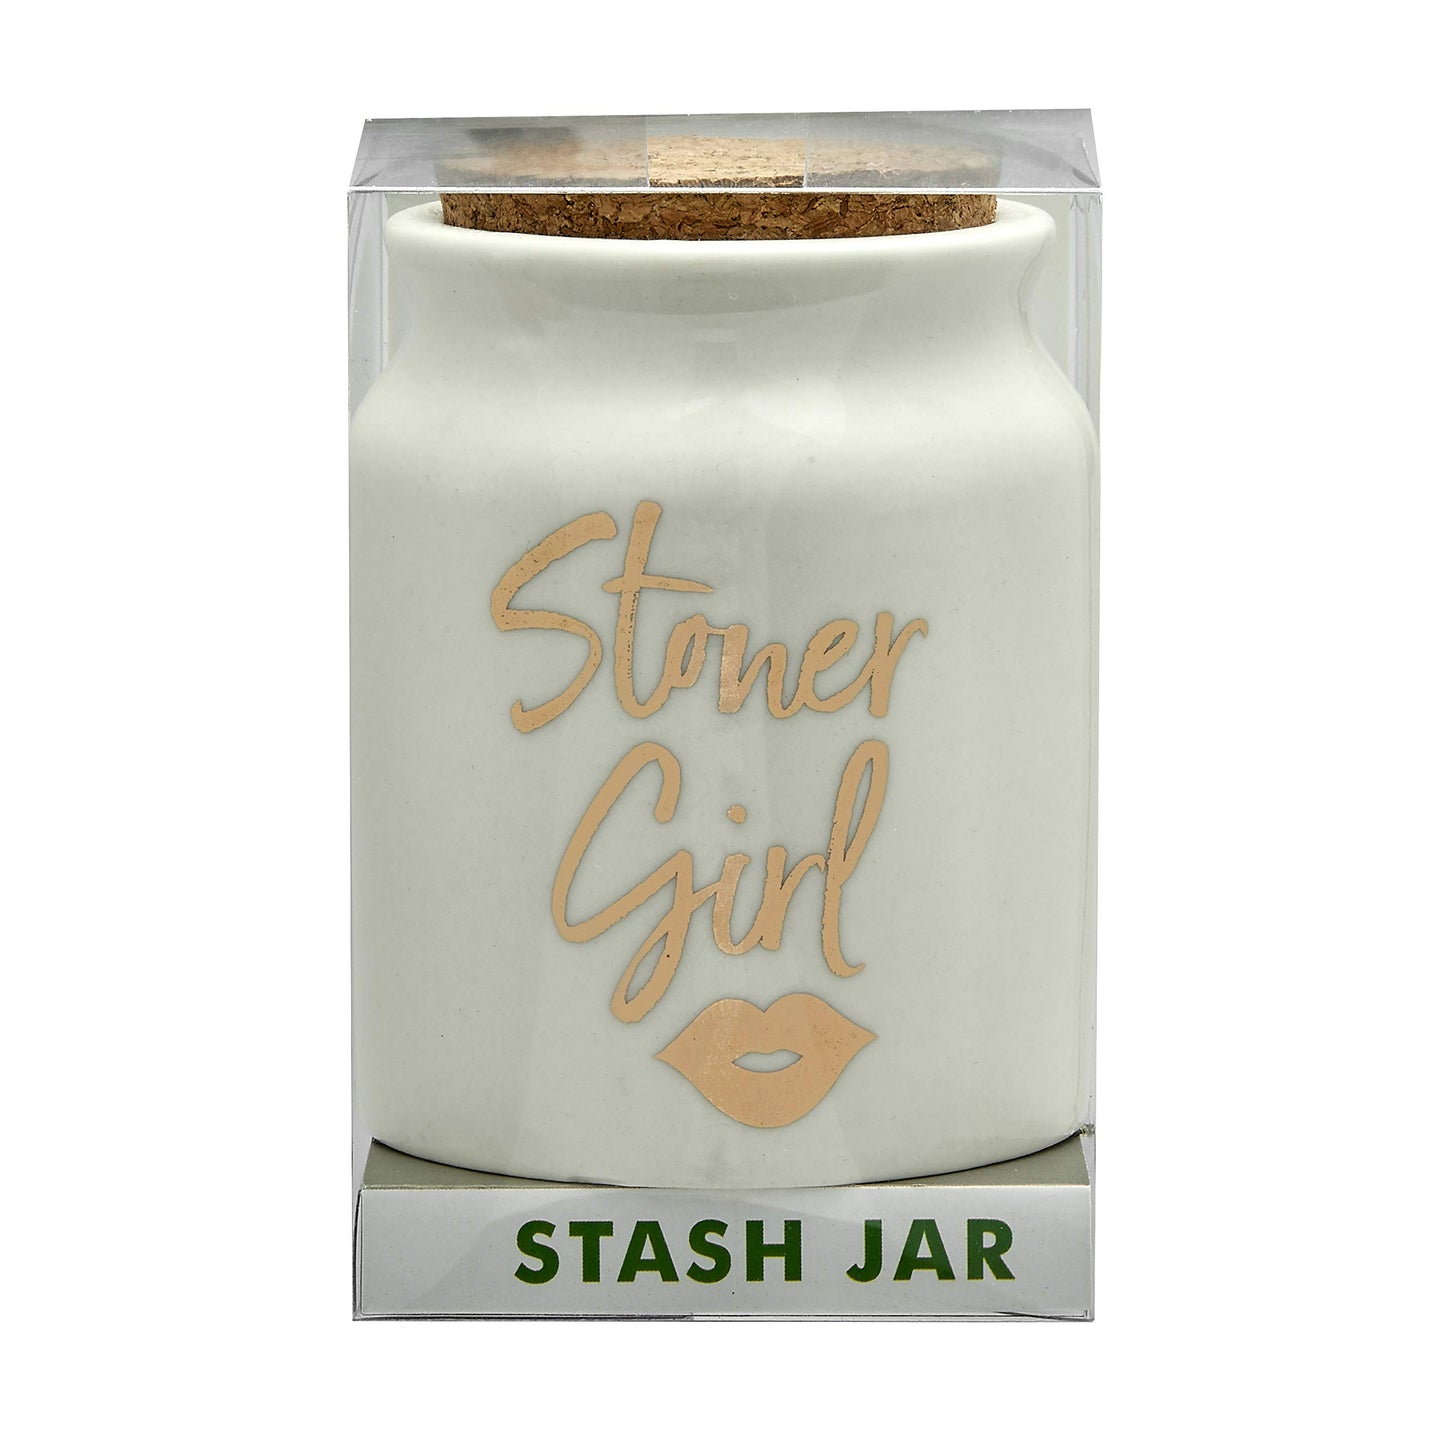 FASHIONCRAFT 88070 Stoner Girl Stash Jar – White with Gold Letters, Novetly Stash Jar, Herb Jar